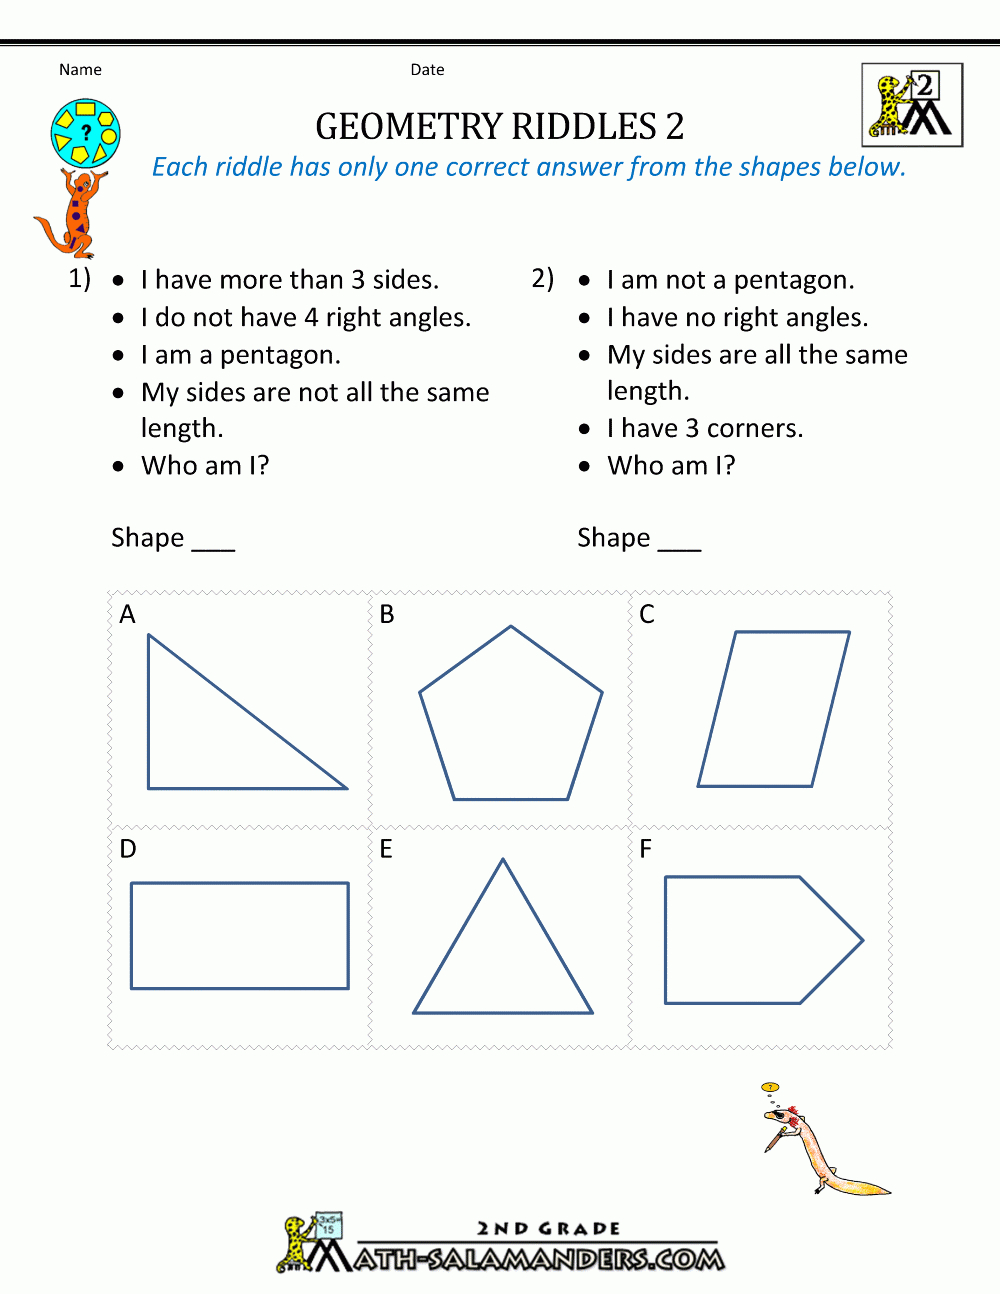 Free Geometry Worksheets 2Nd Grade Geometry Riddles - Free Printable Geometry Worksheets For Middle School